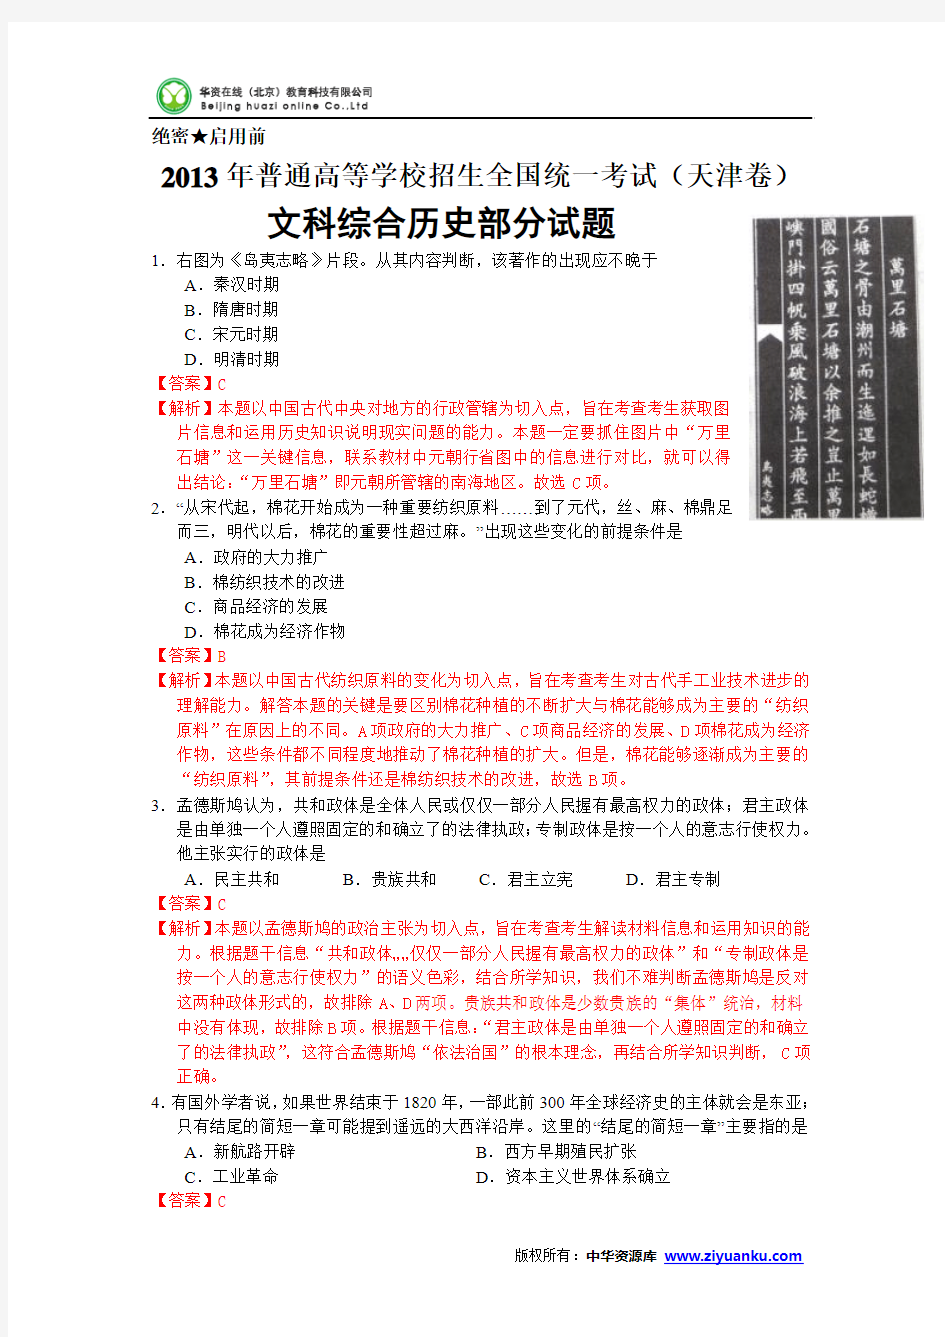 2013年高考真题——文综历史(天津卷)解析版(2)